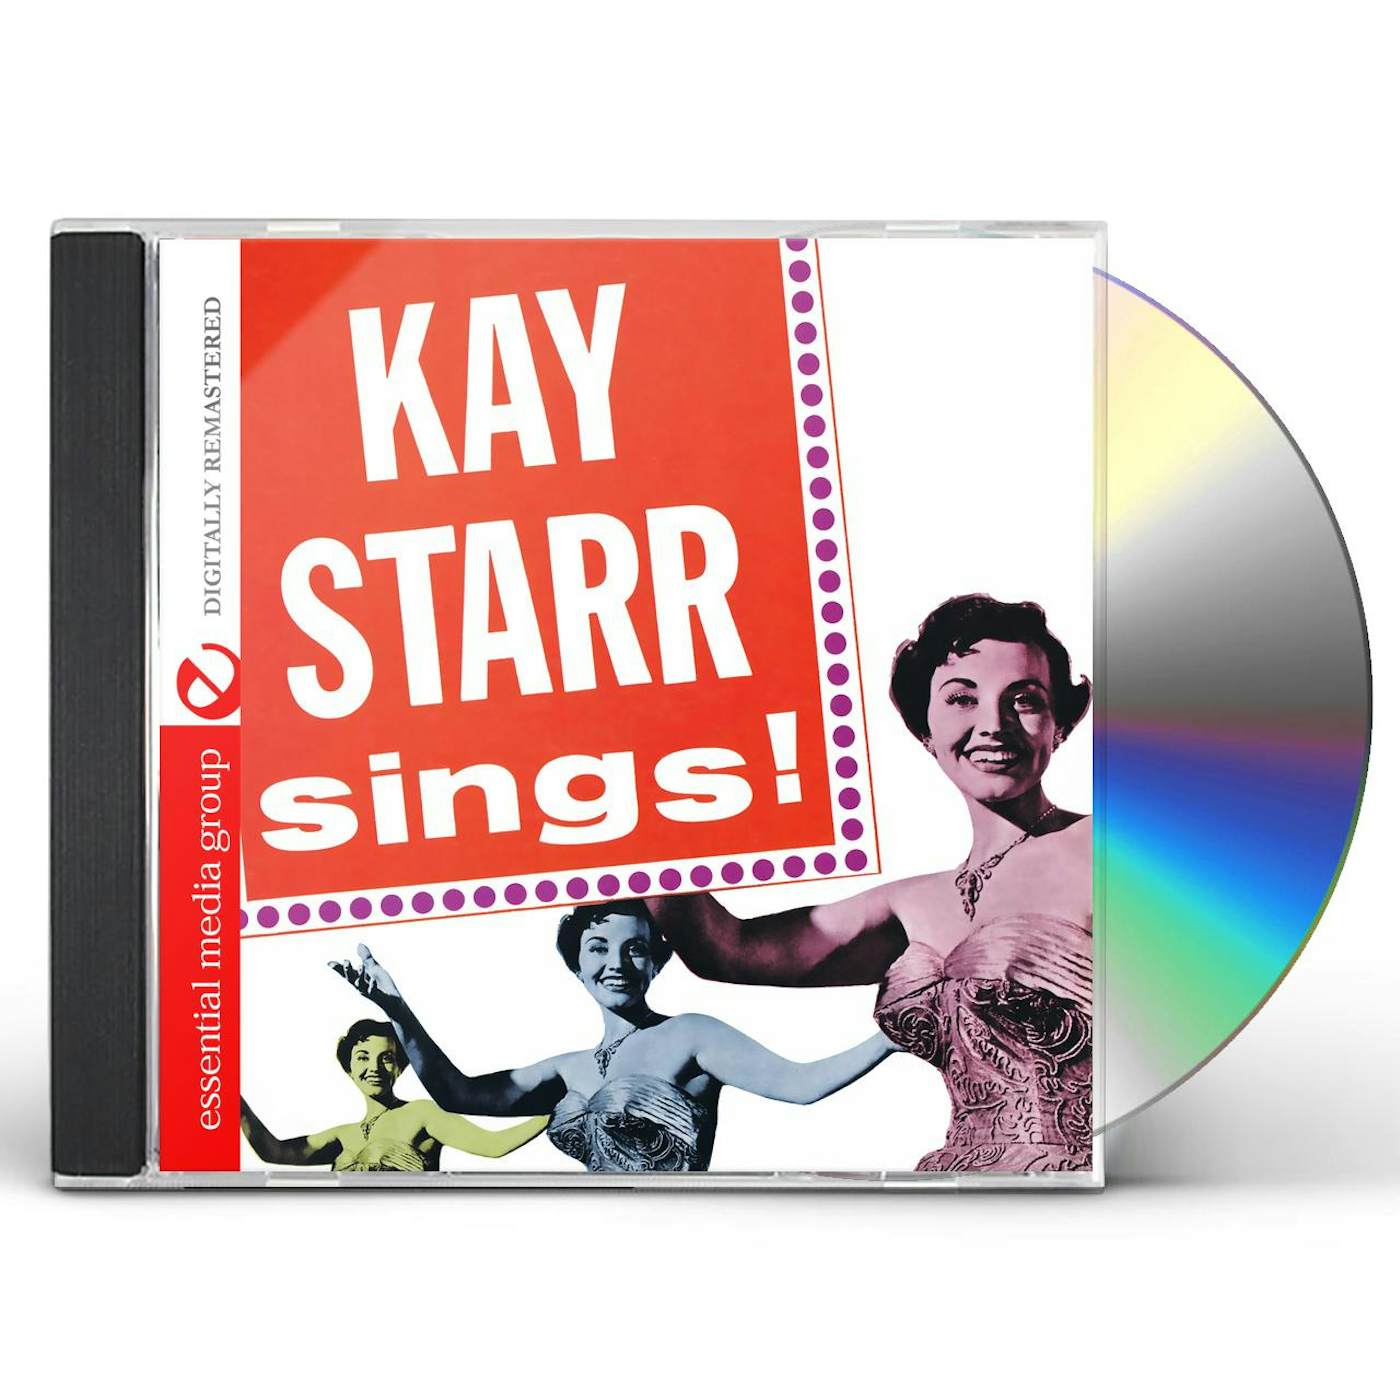 KAY STARR SINGS CD